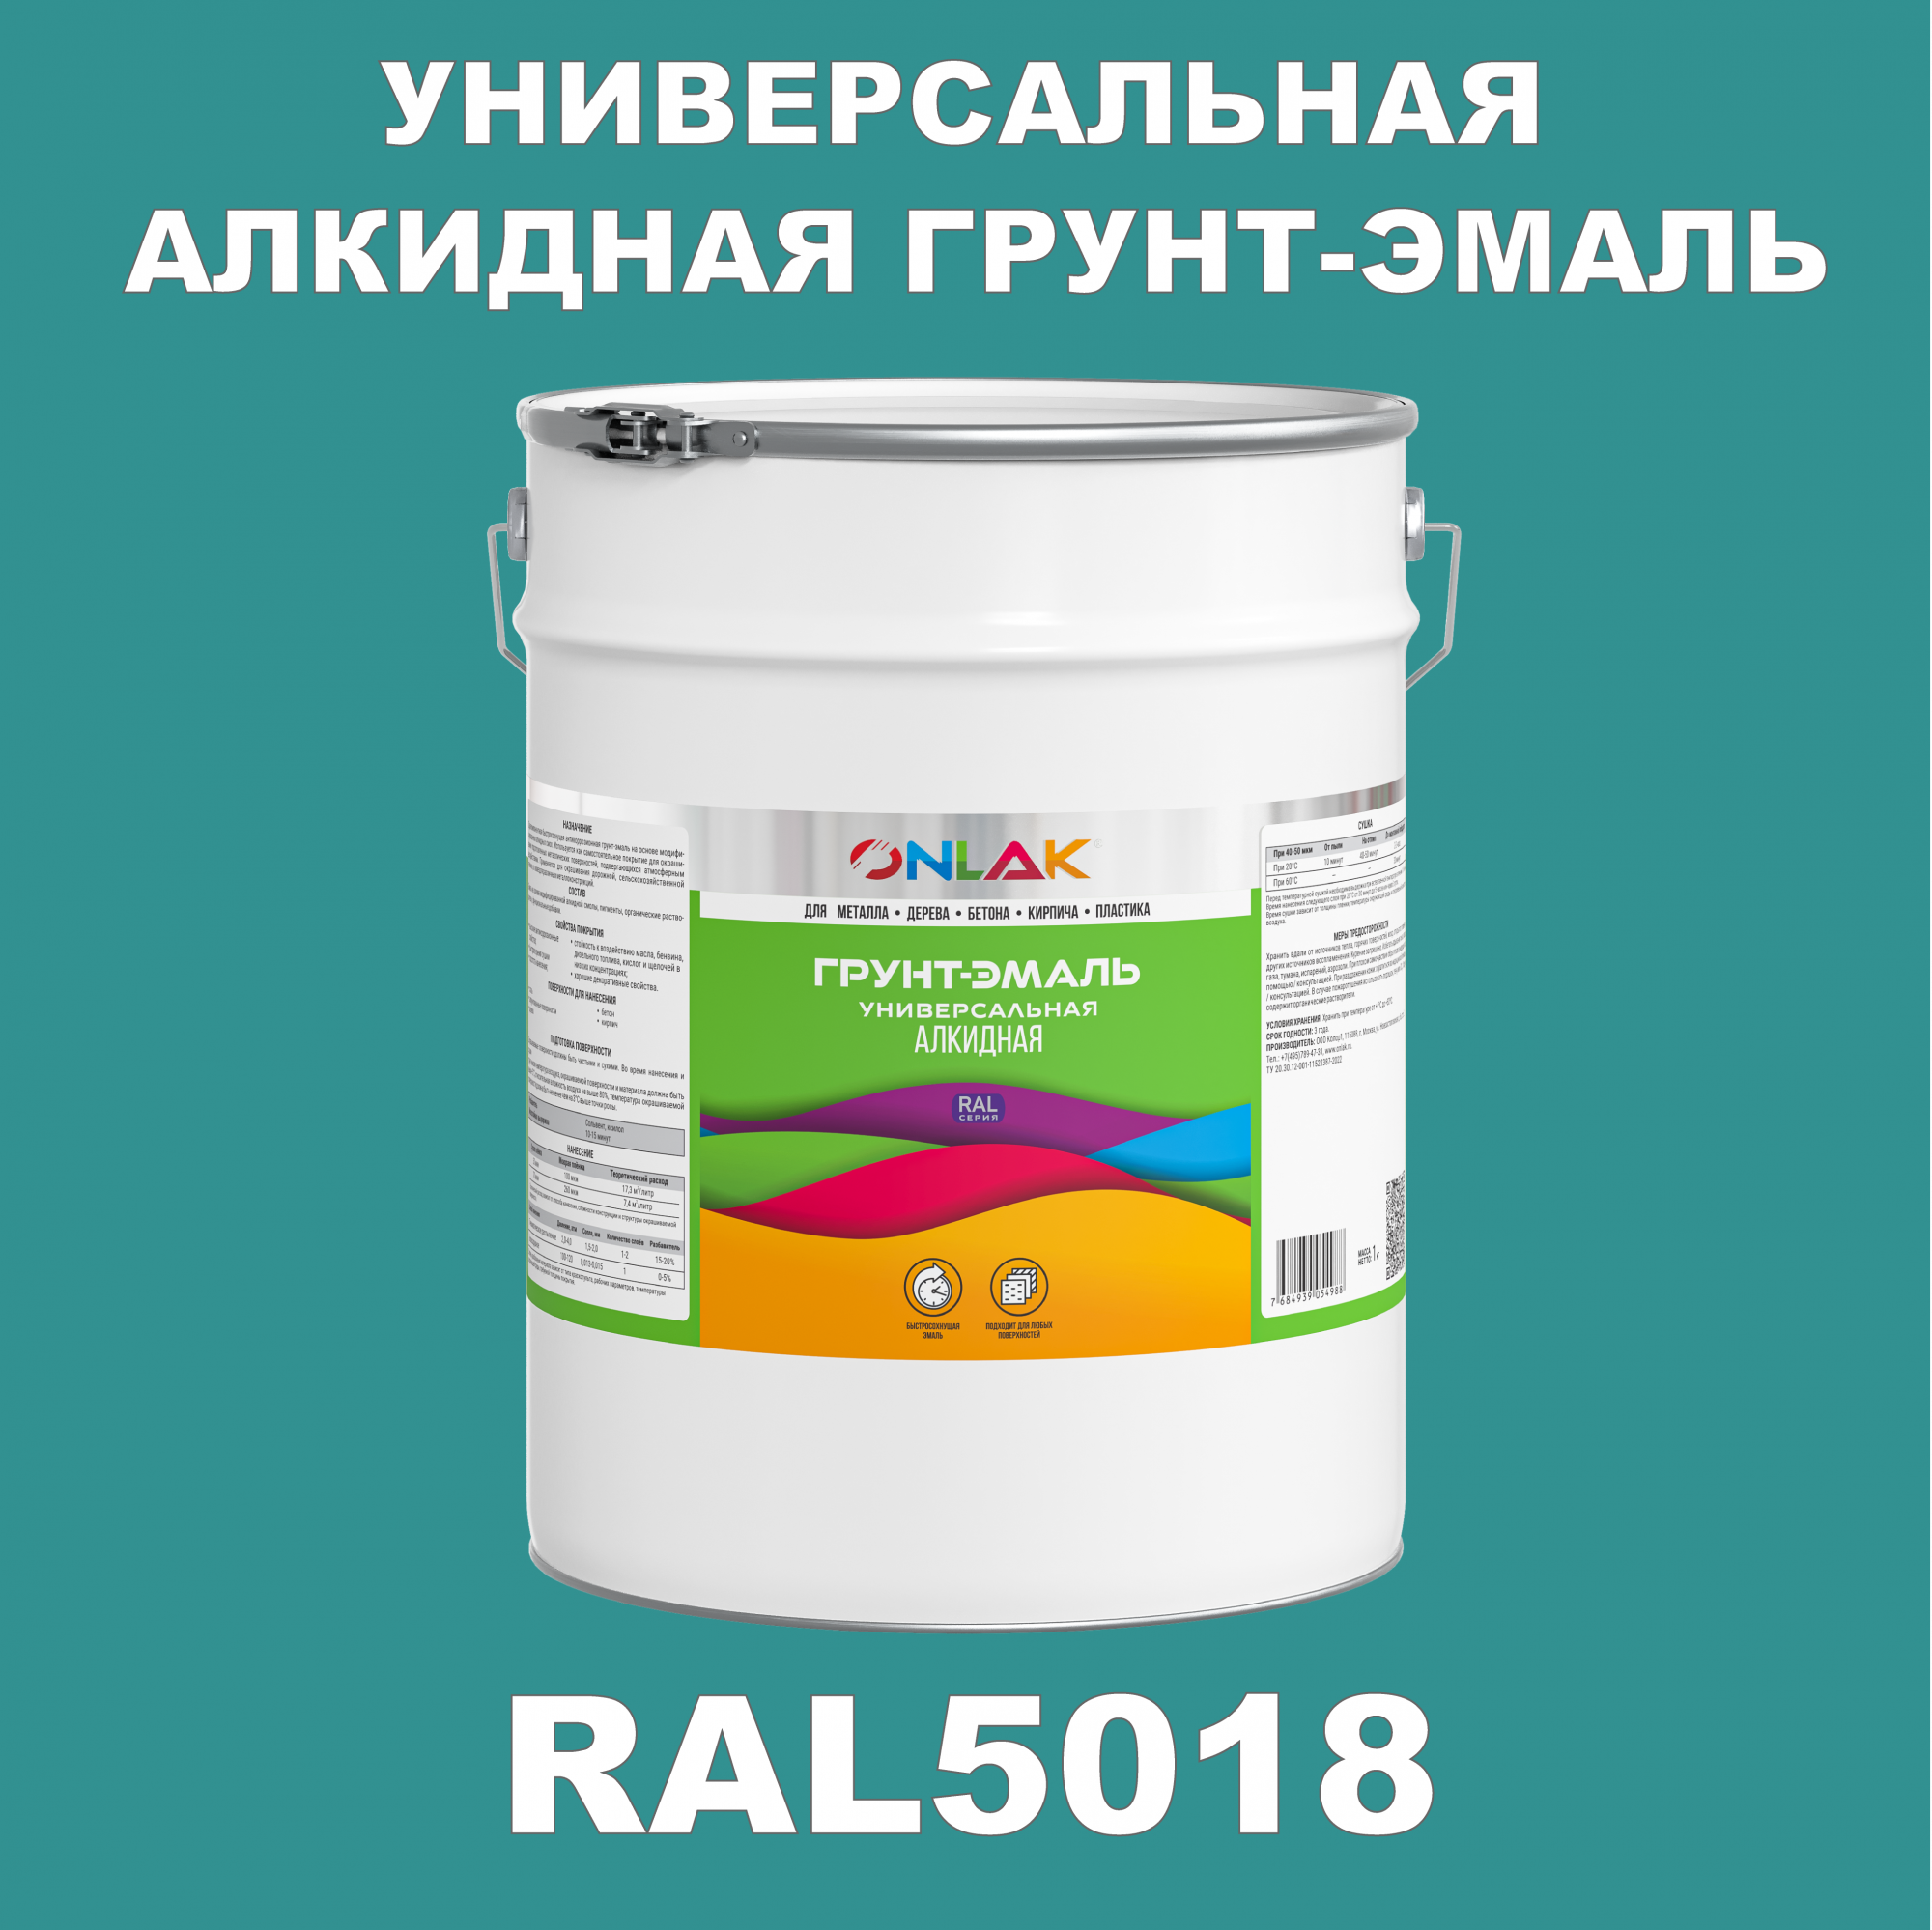 Грунт-эмаль ONLAK 1К RAL5018 антикоррозионная алкидная по металлу по ржавчине 20 кг грунт эмаль престиж по ржавчине алкидная зеленая 1 9 кг